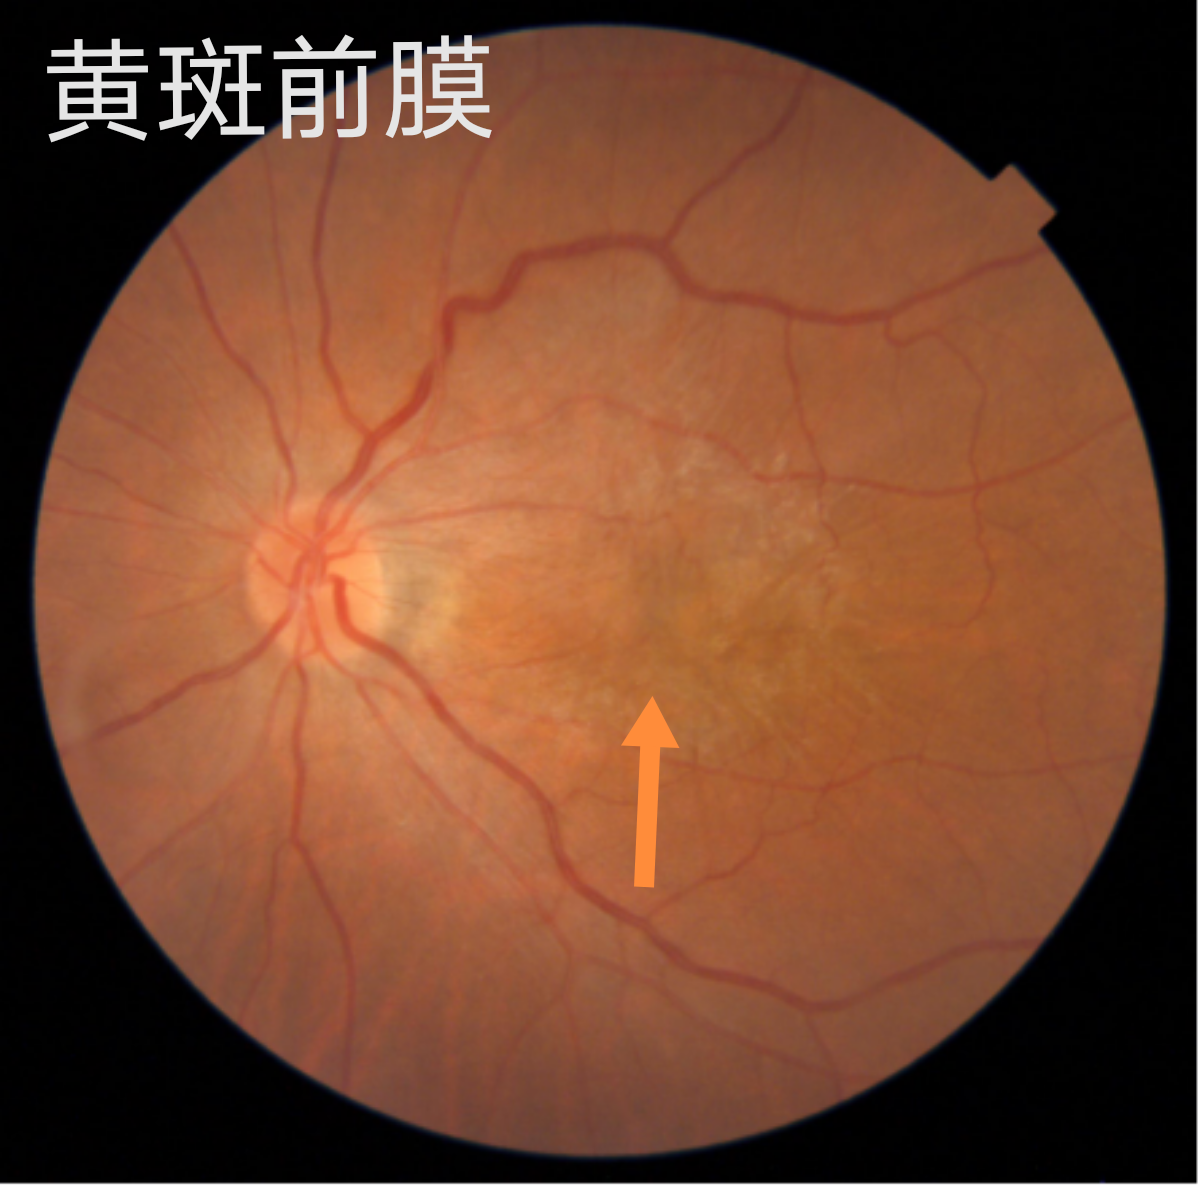 下面两图分别为黄斑前膜的眼底照相及黄斑oct检查报告2